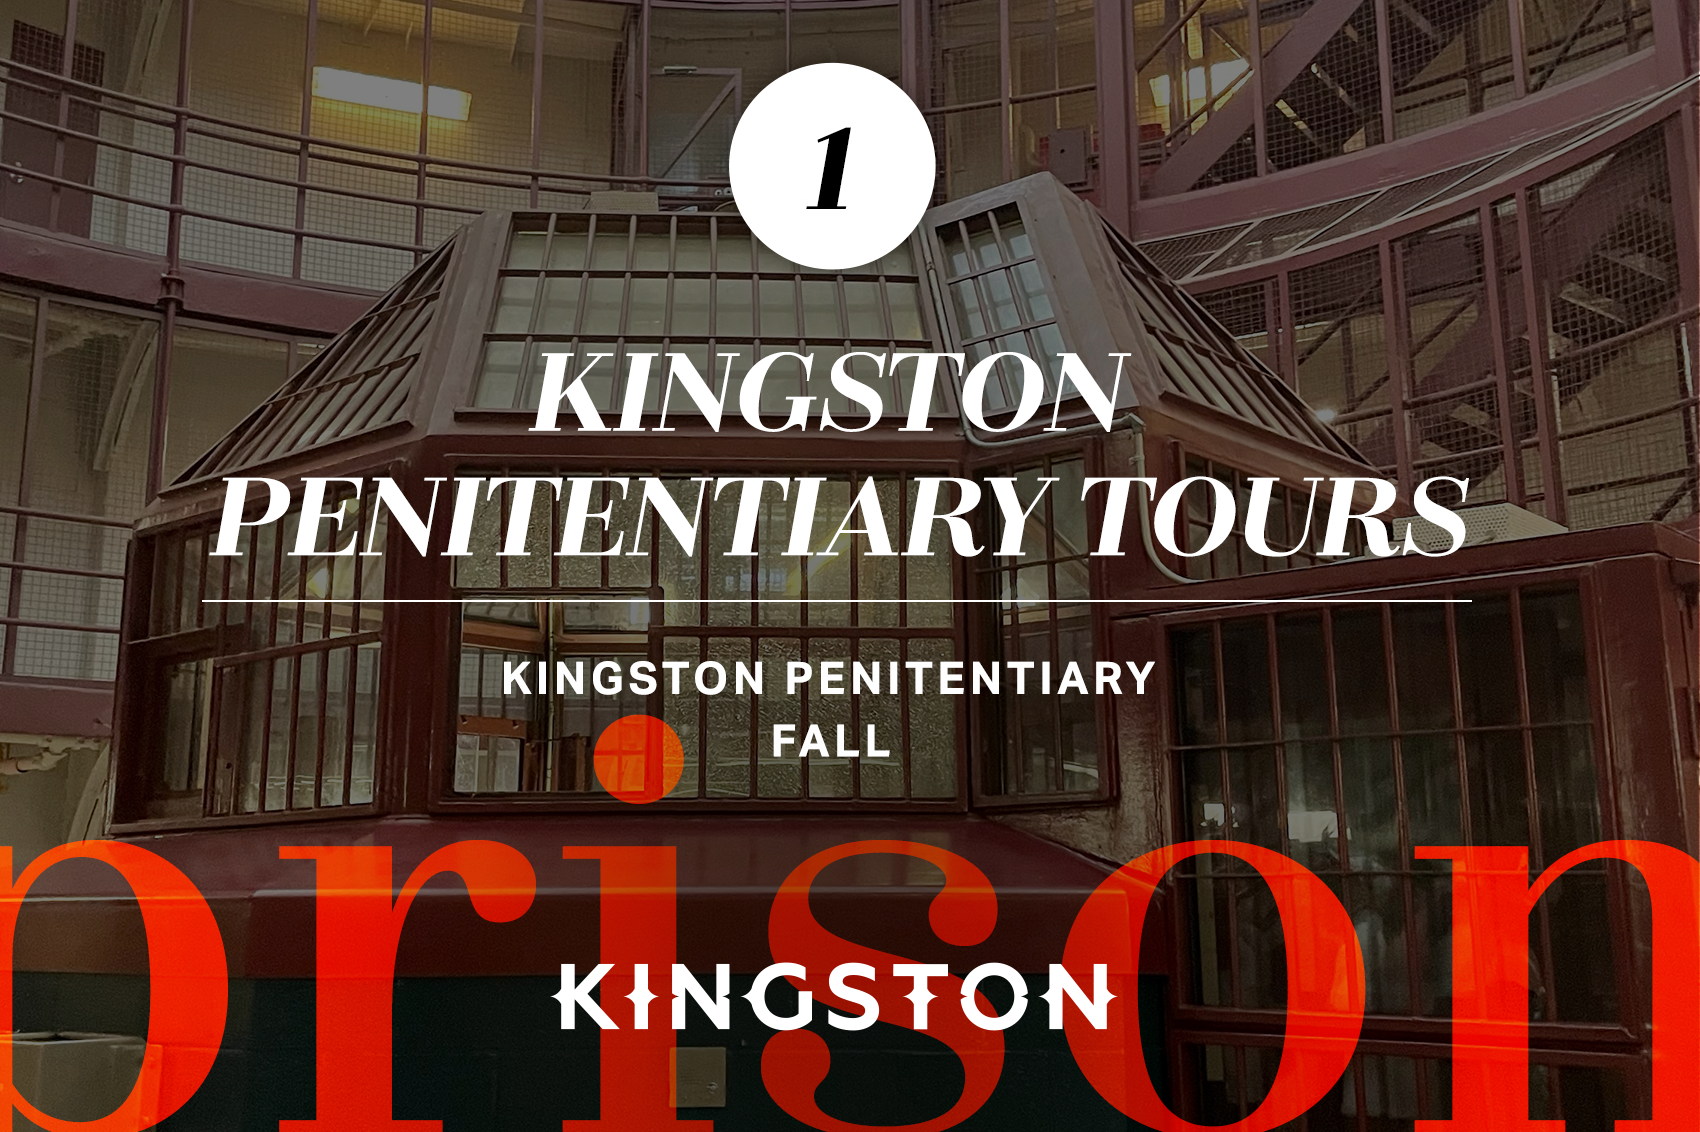 1. Kingston Penitentiary Tours Fall